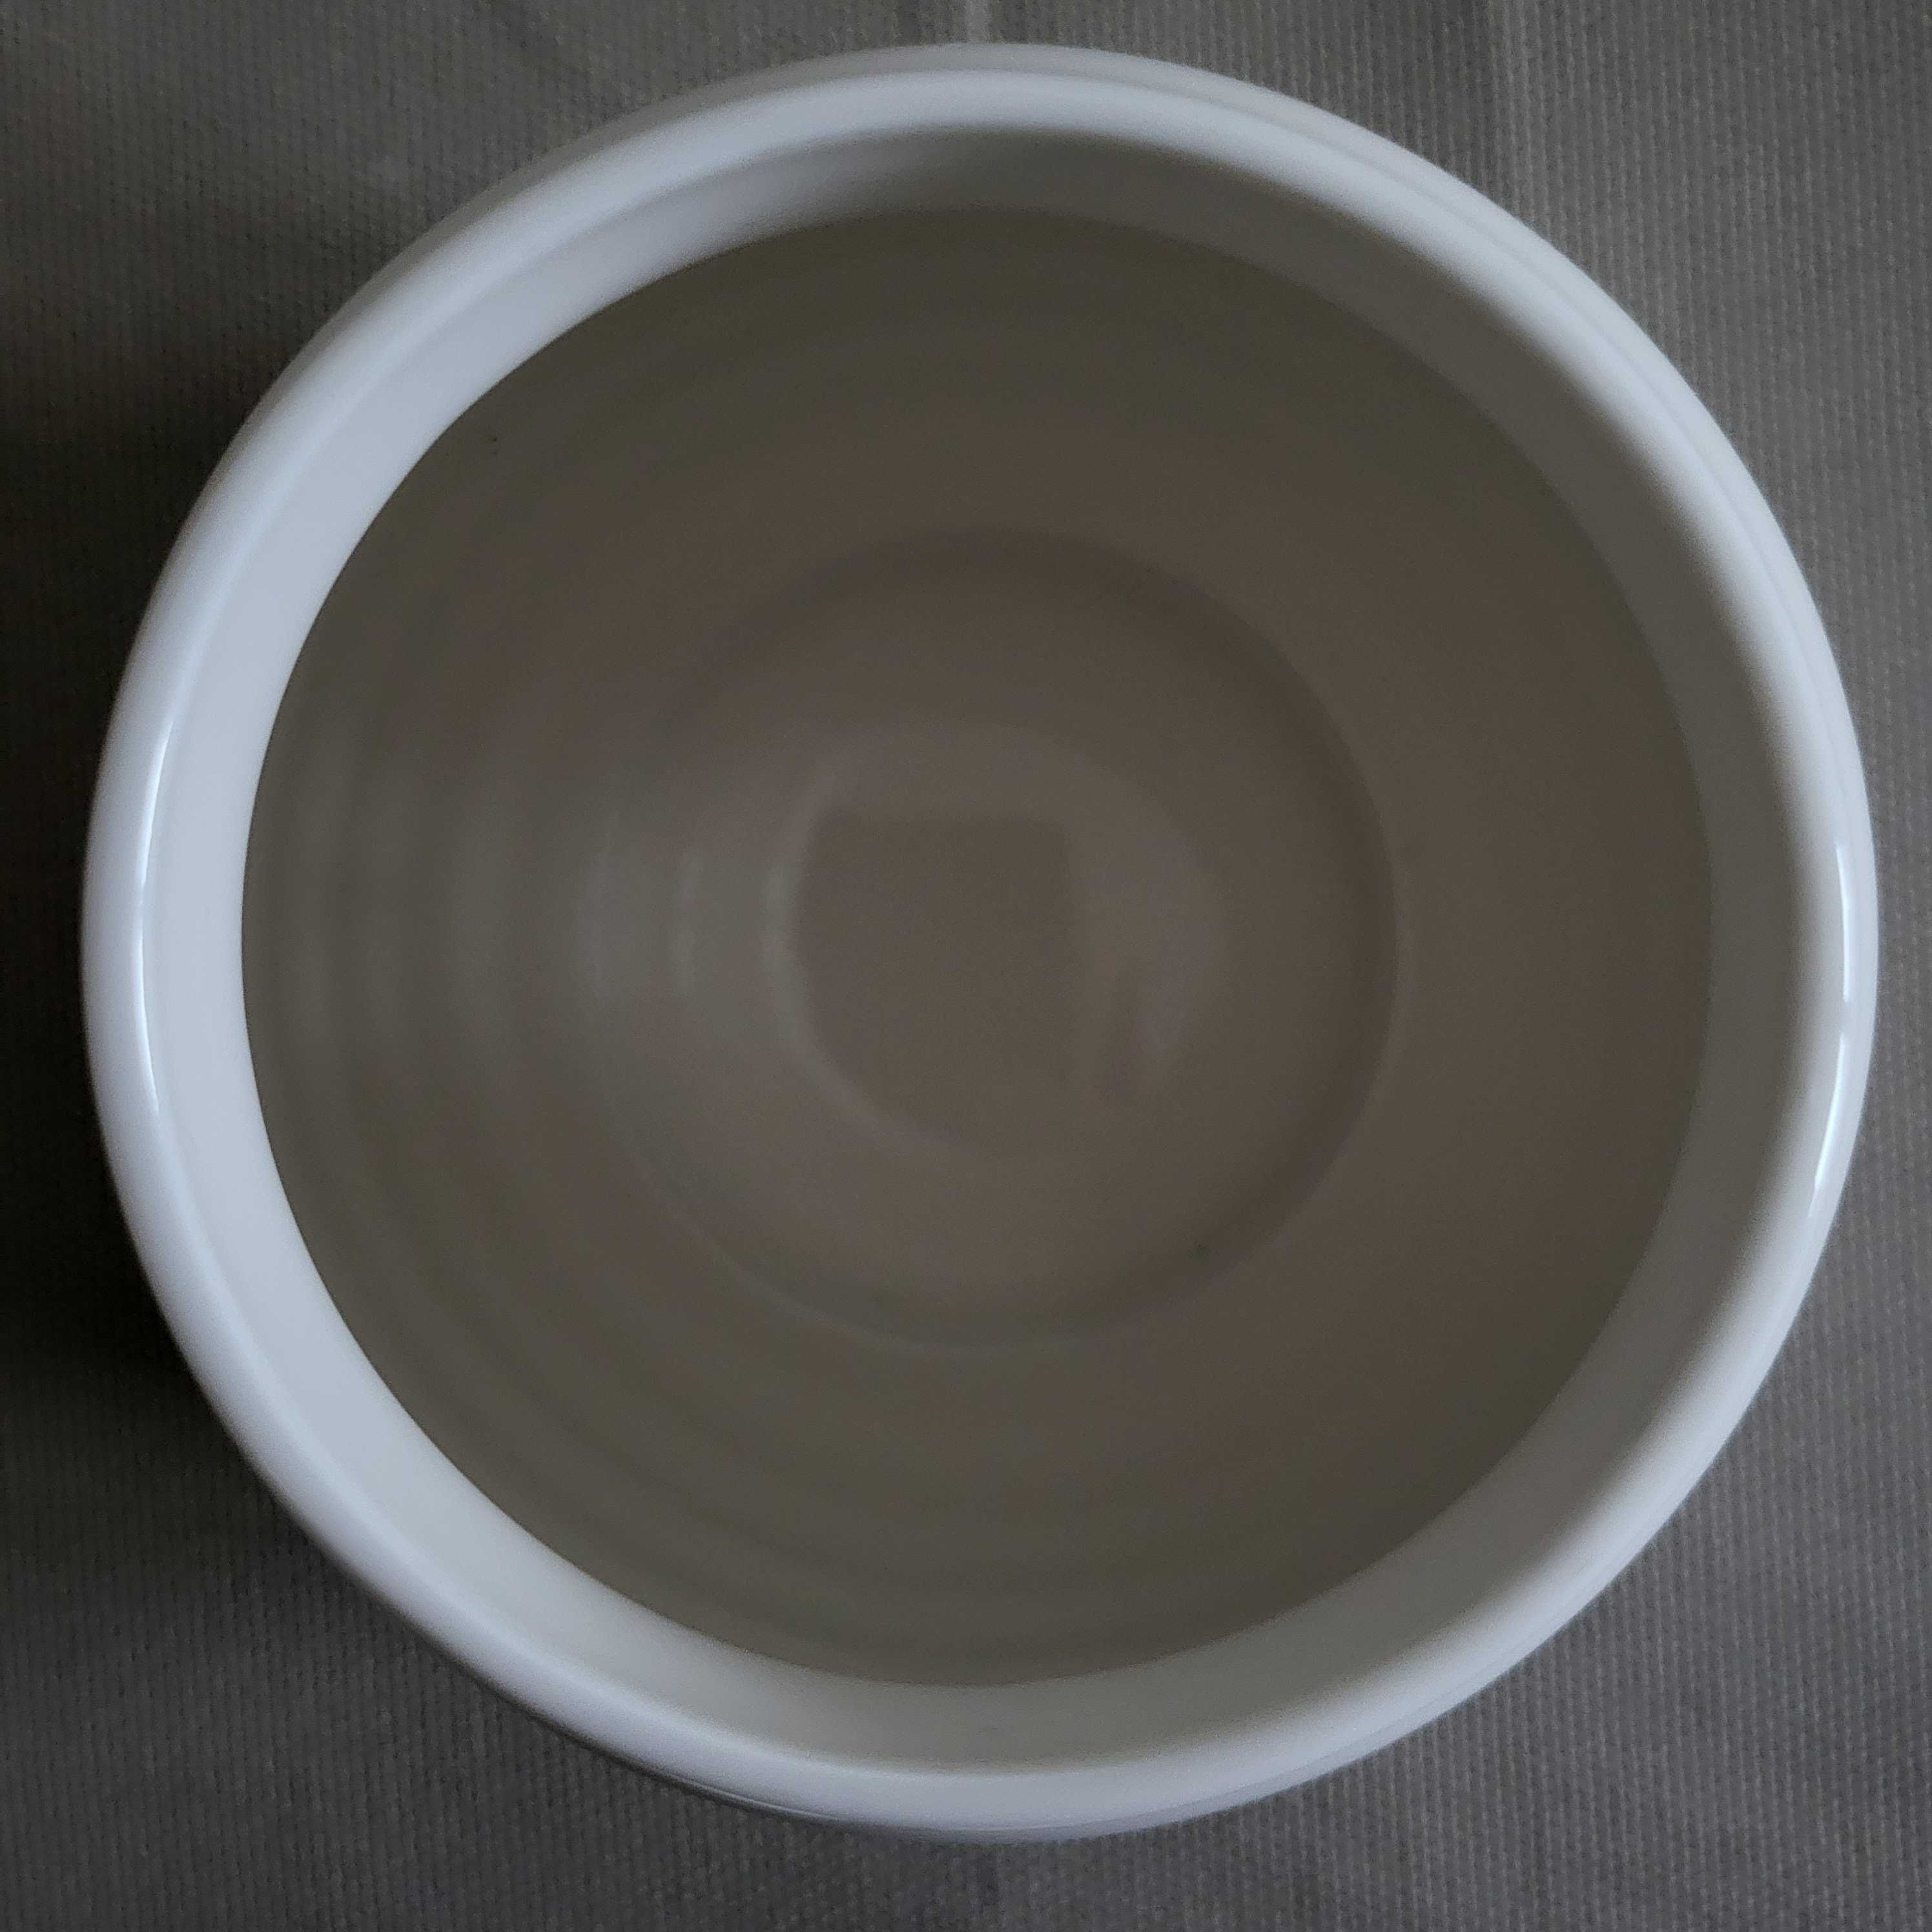 Porcelanowy wazon / wazonik / pojemnik / cukiernica Villeroy & Boch